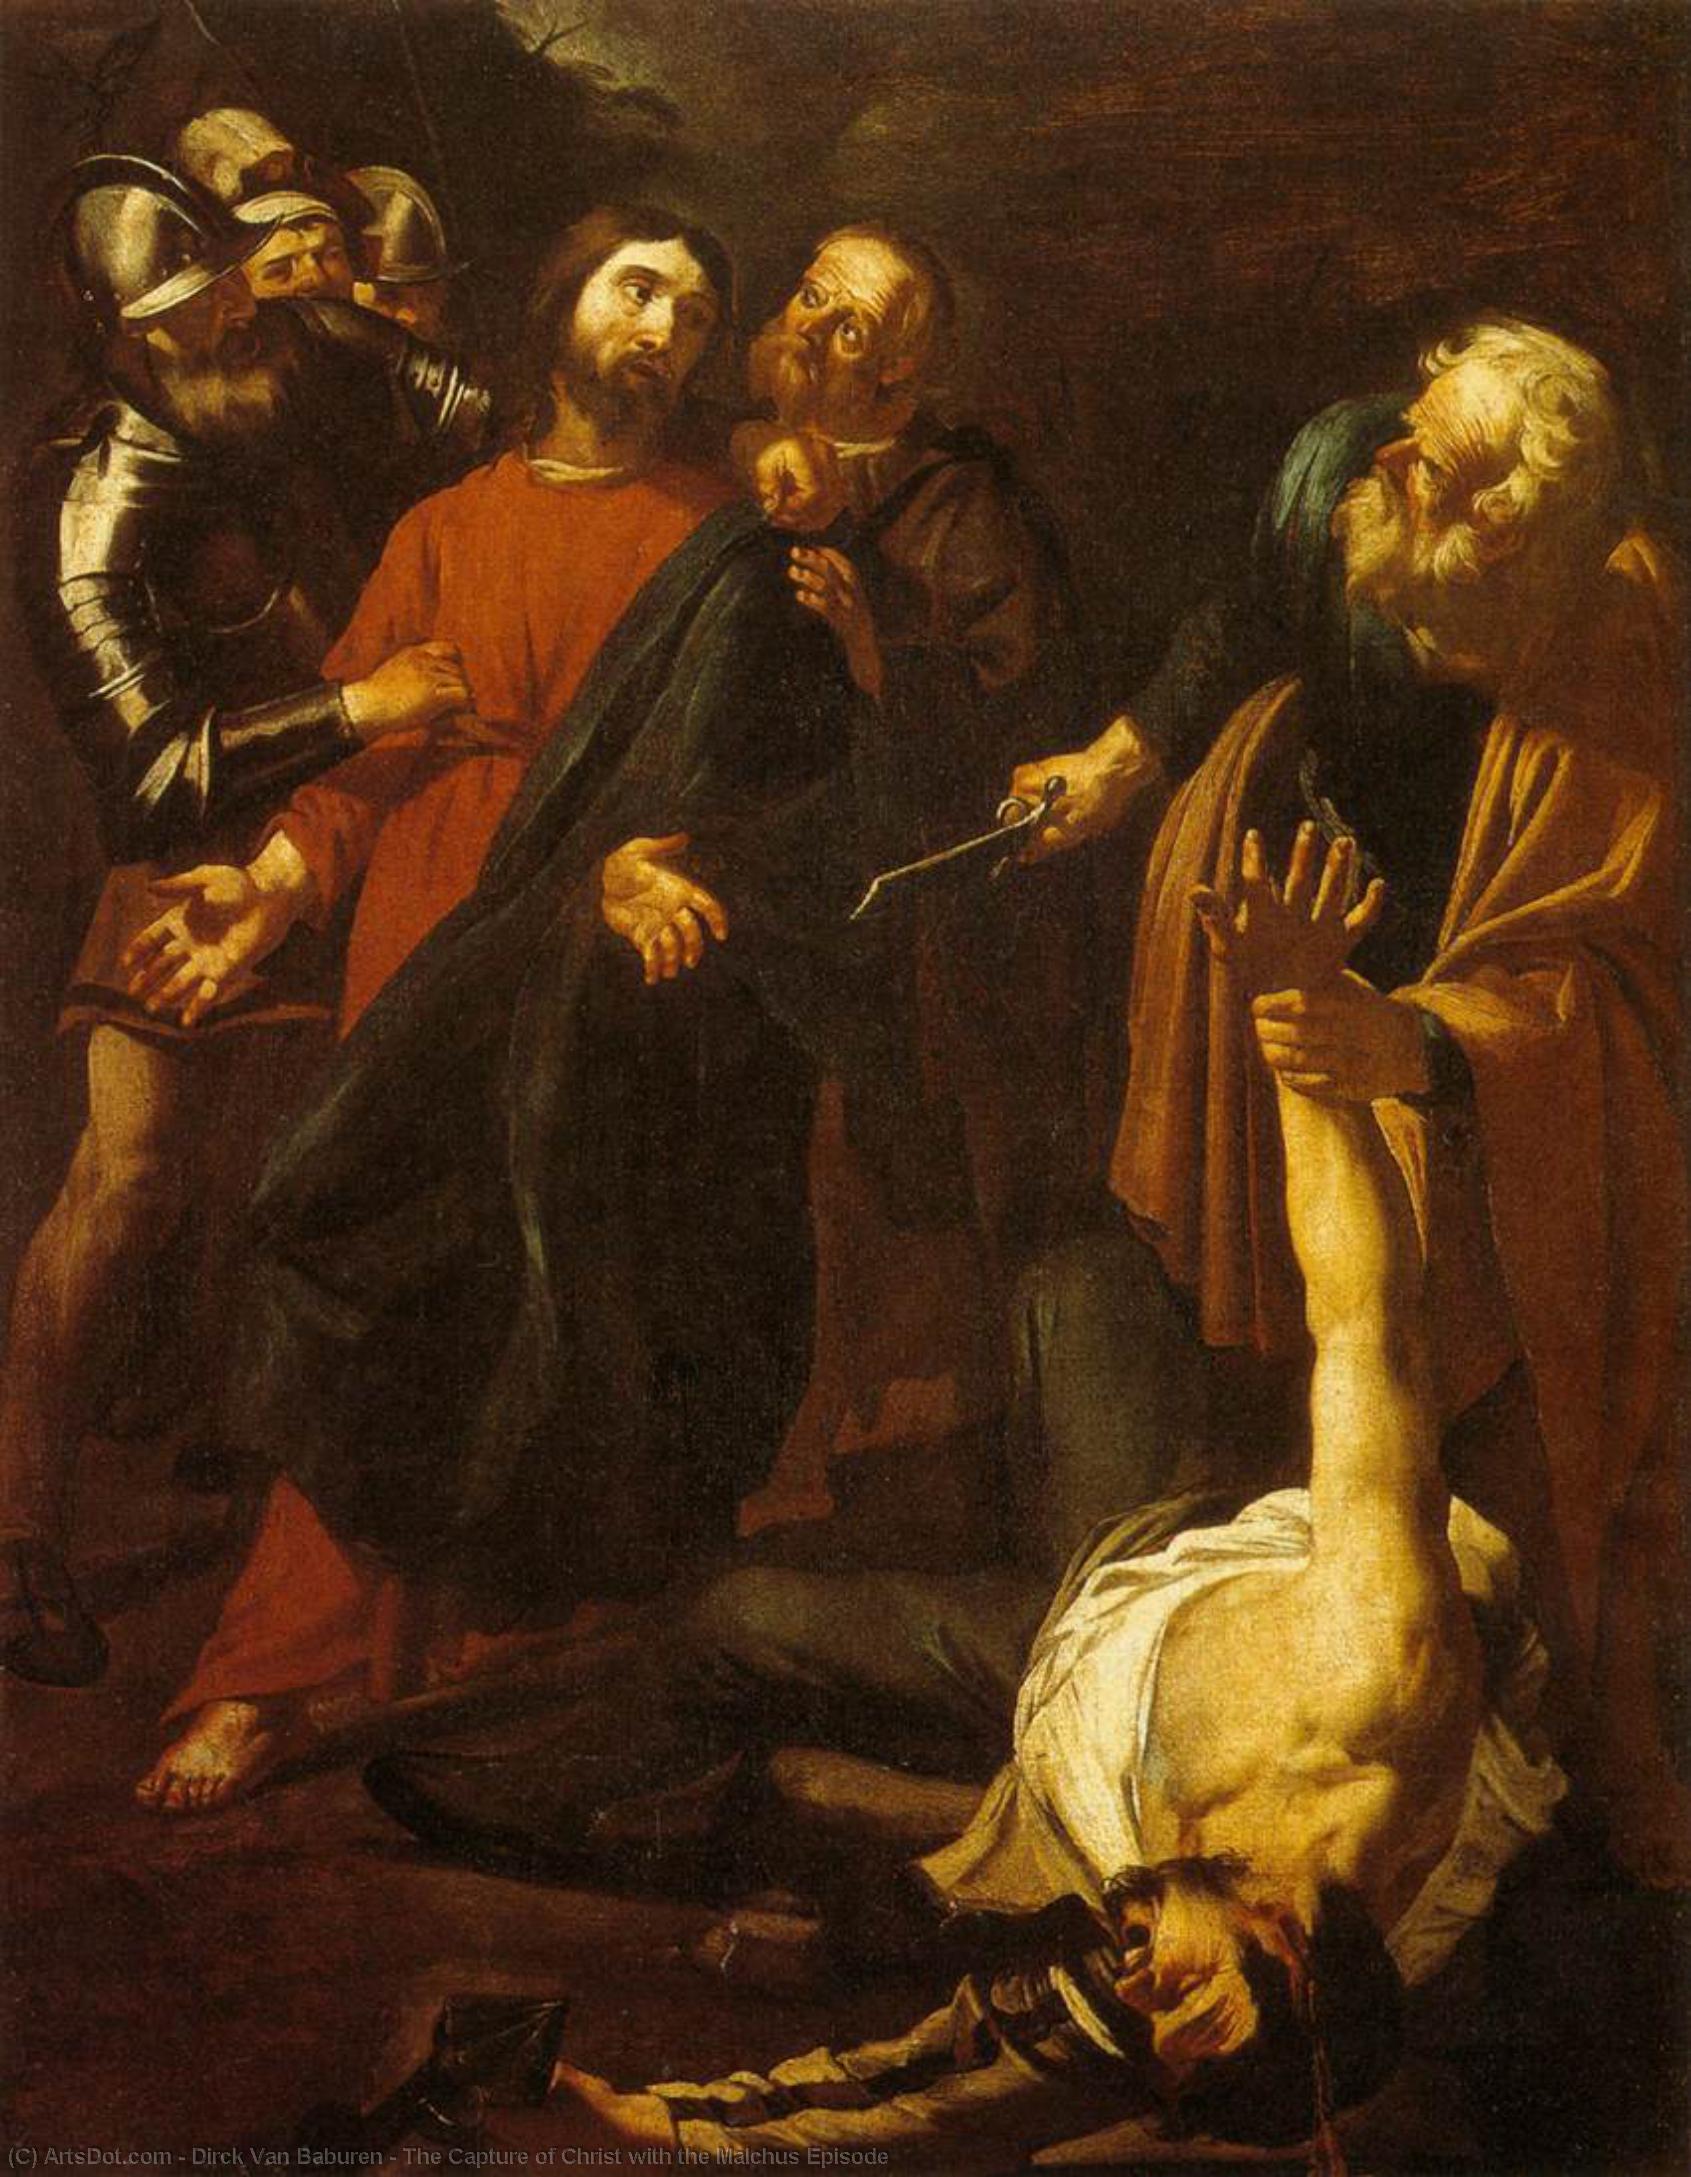 WikiOO.org - Encyclopedia of Fine Arts - Maleri, Artwork Dirck Van Baburen - The Capture of Christ with the Malchus Episode